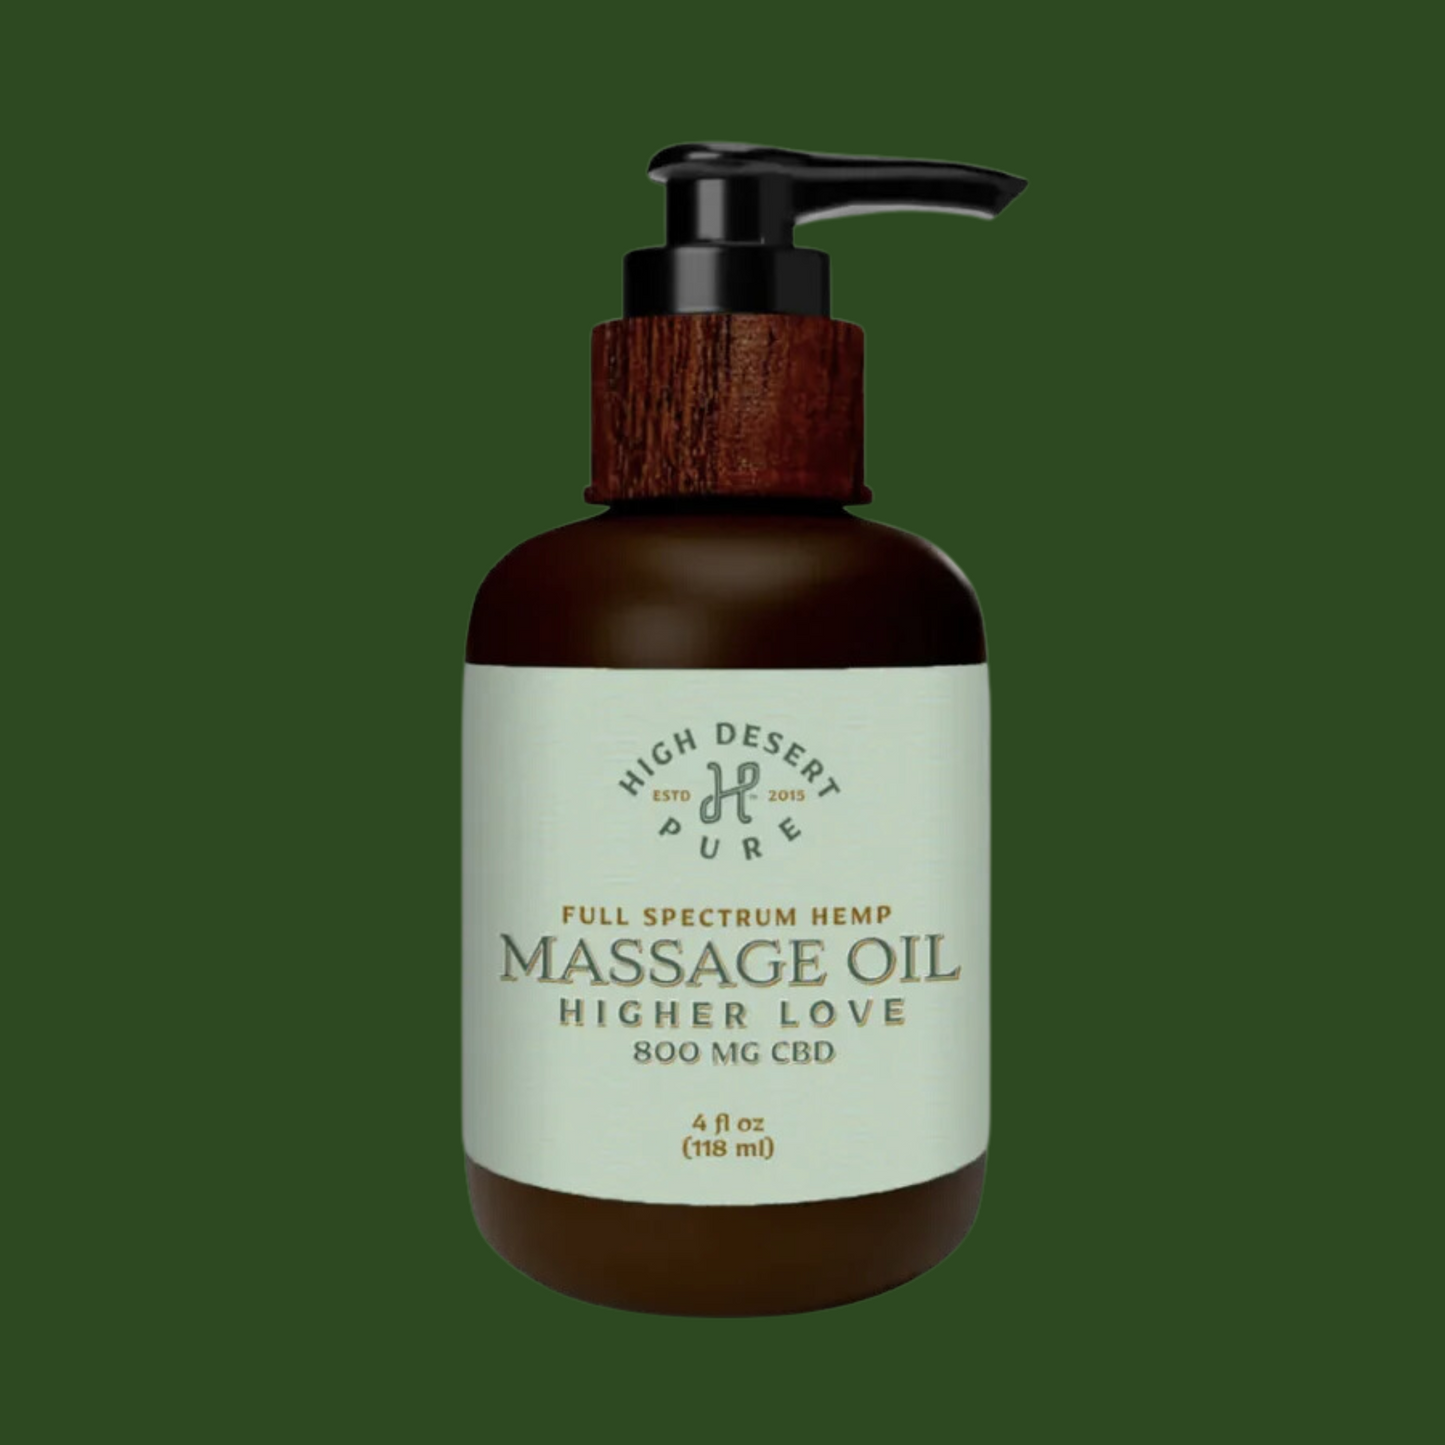 High Desert Pure Massage Oil